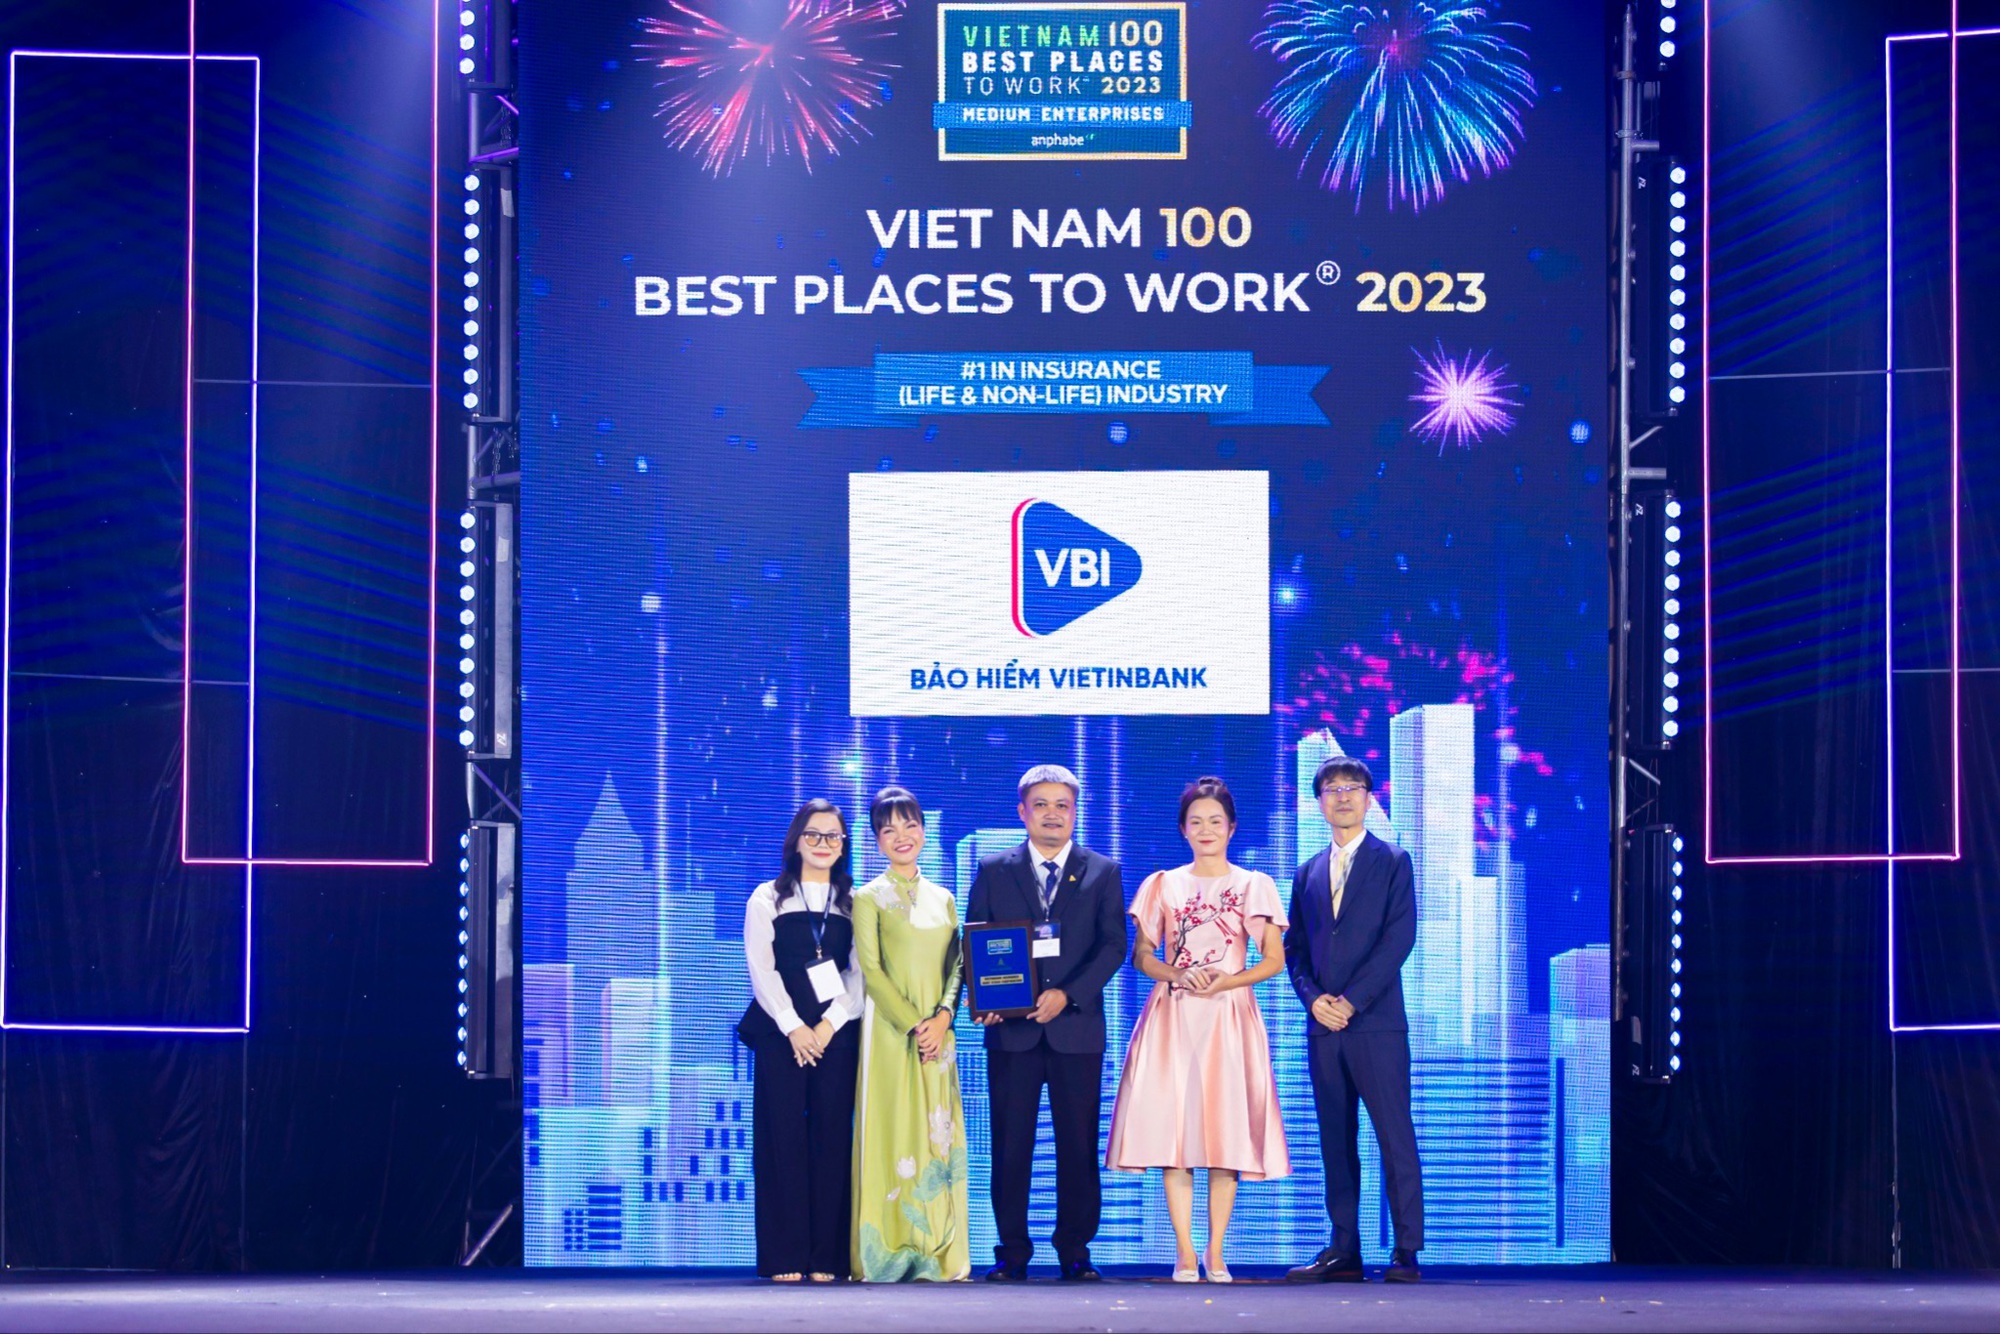 Bảo hiểm VietinBank - VBI bất ngờ lọt Top 1 ngành Bảo hiểm và thứ hạng 8/100 Nơi làm việc tốt nhất Việt Nam - Ảnh 1.